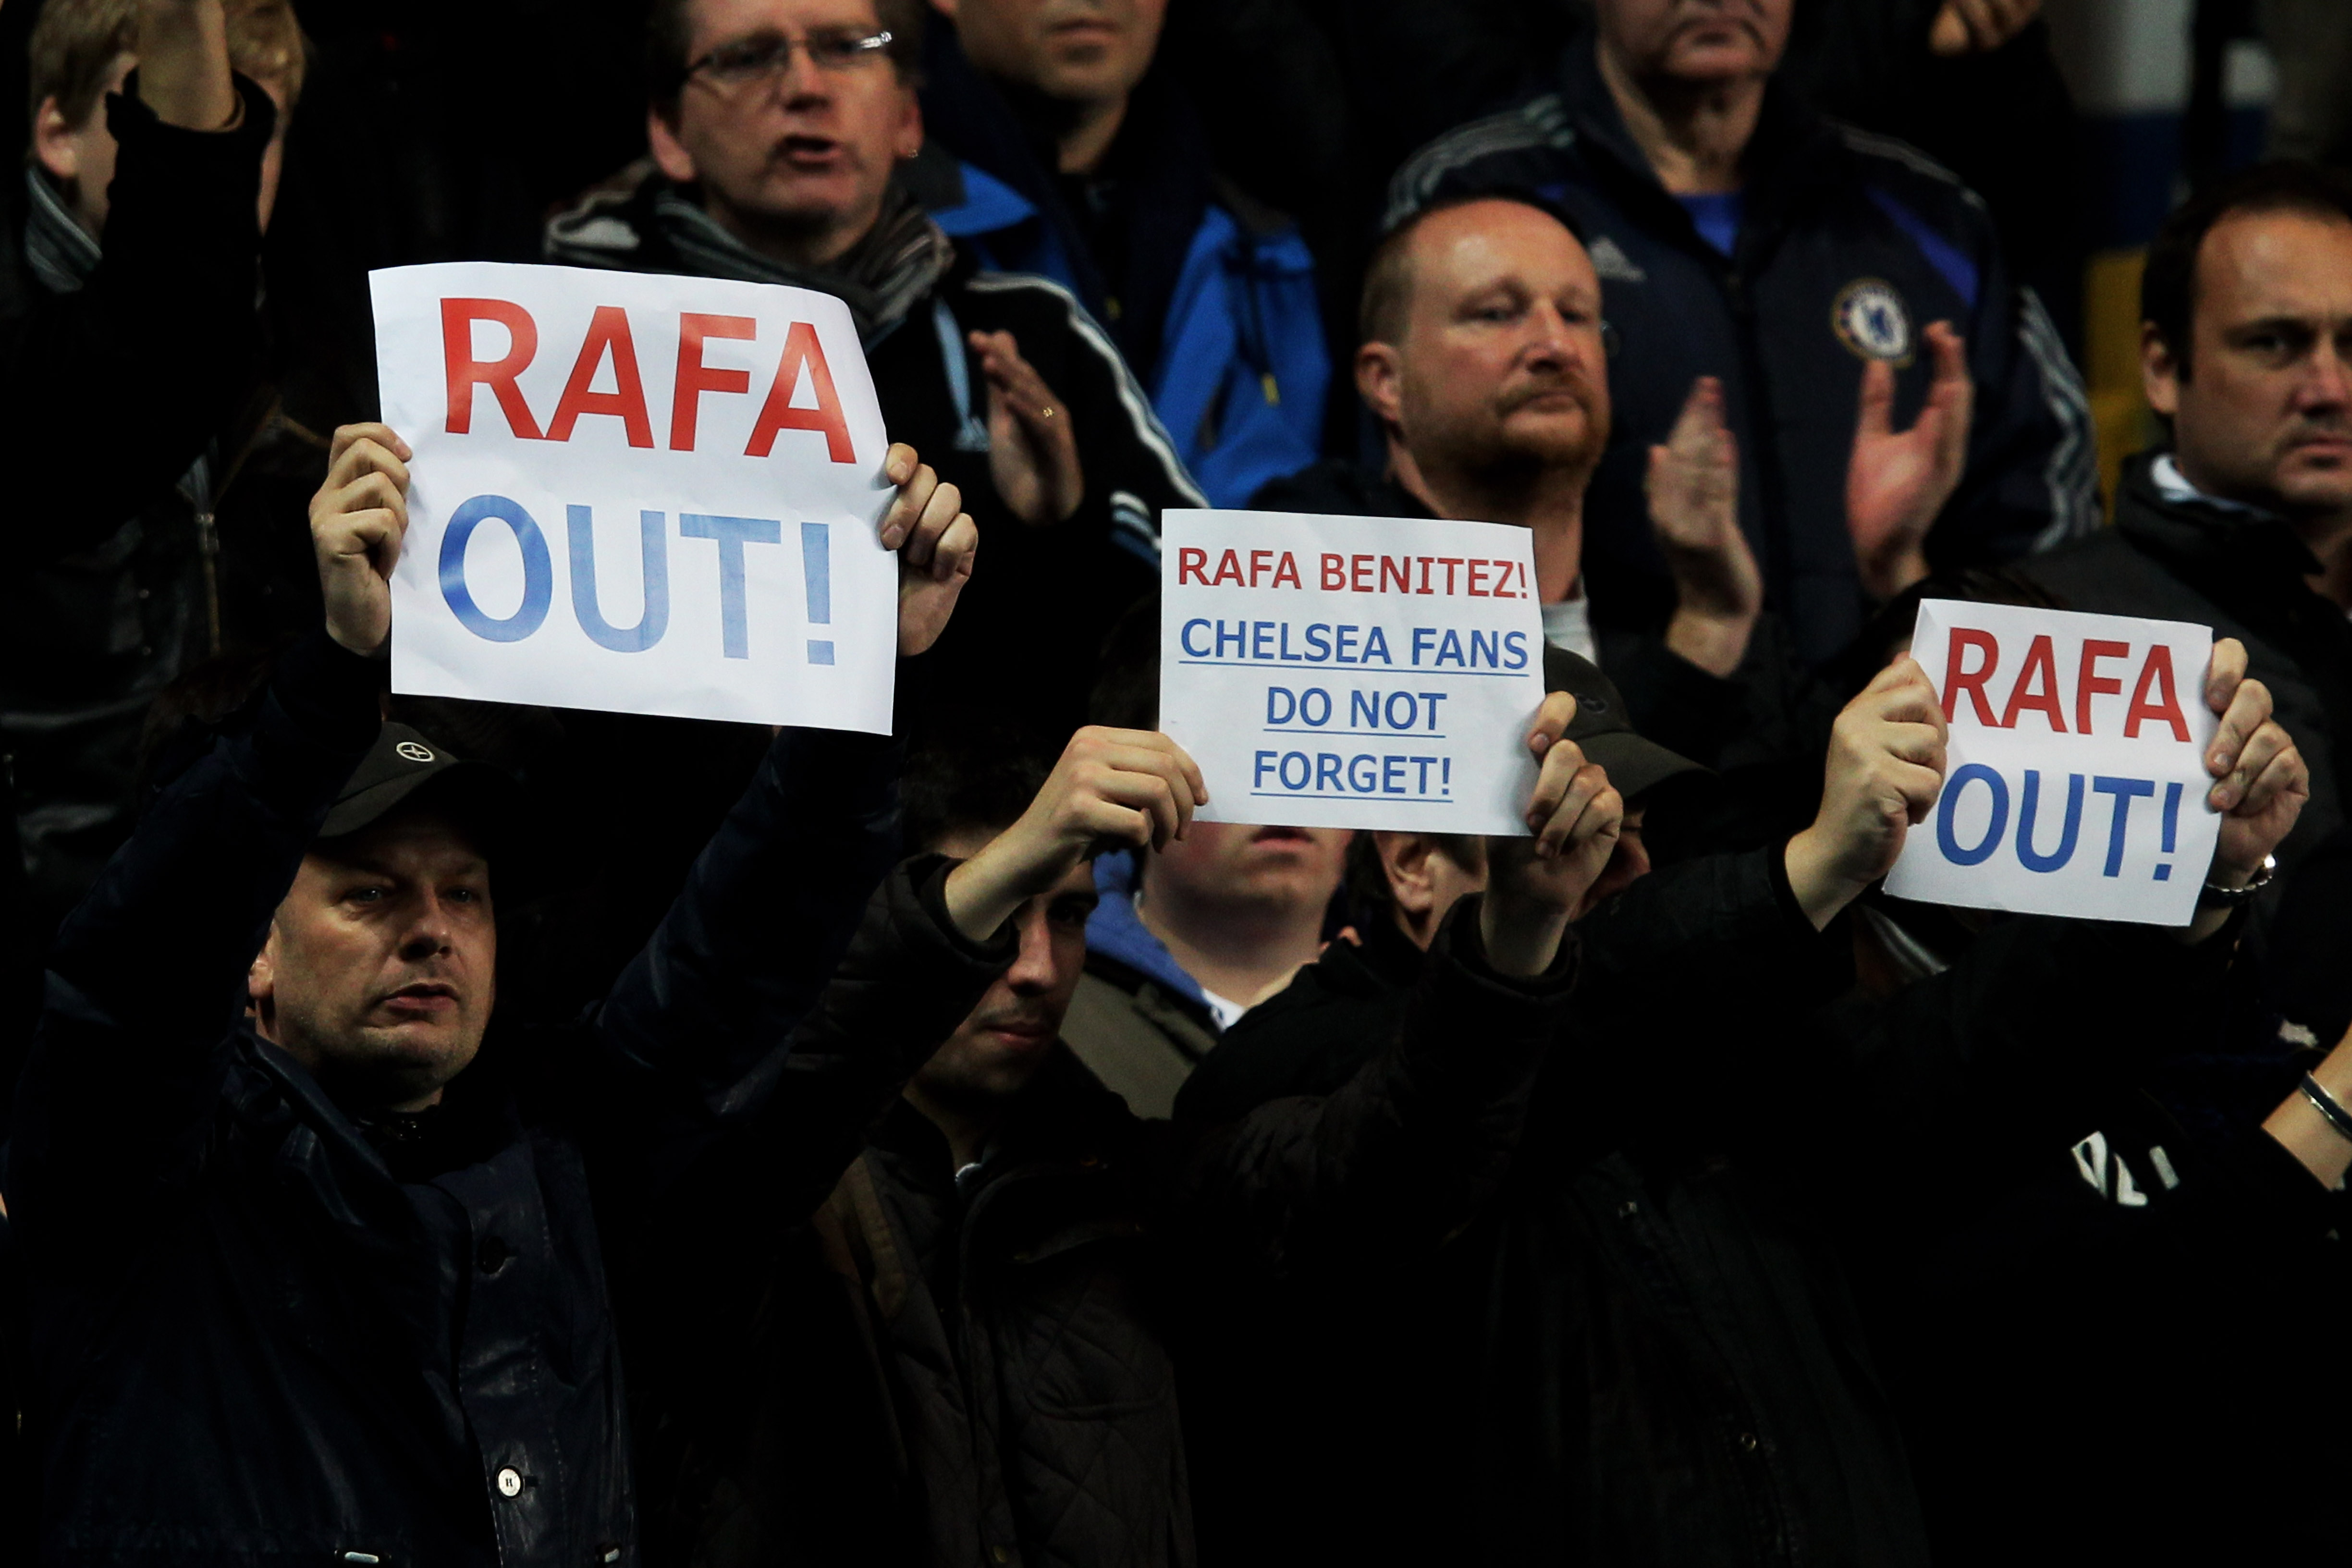 Феновете на Челси посрещнаха Бенитес с плакати ”Рафа вън!”